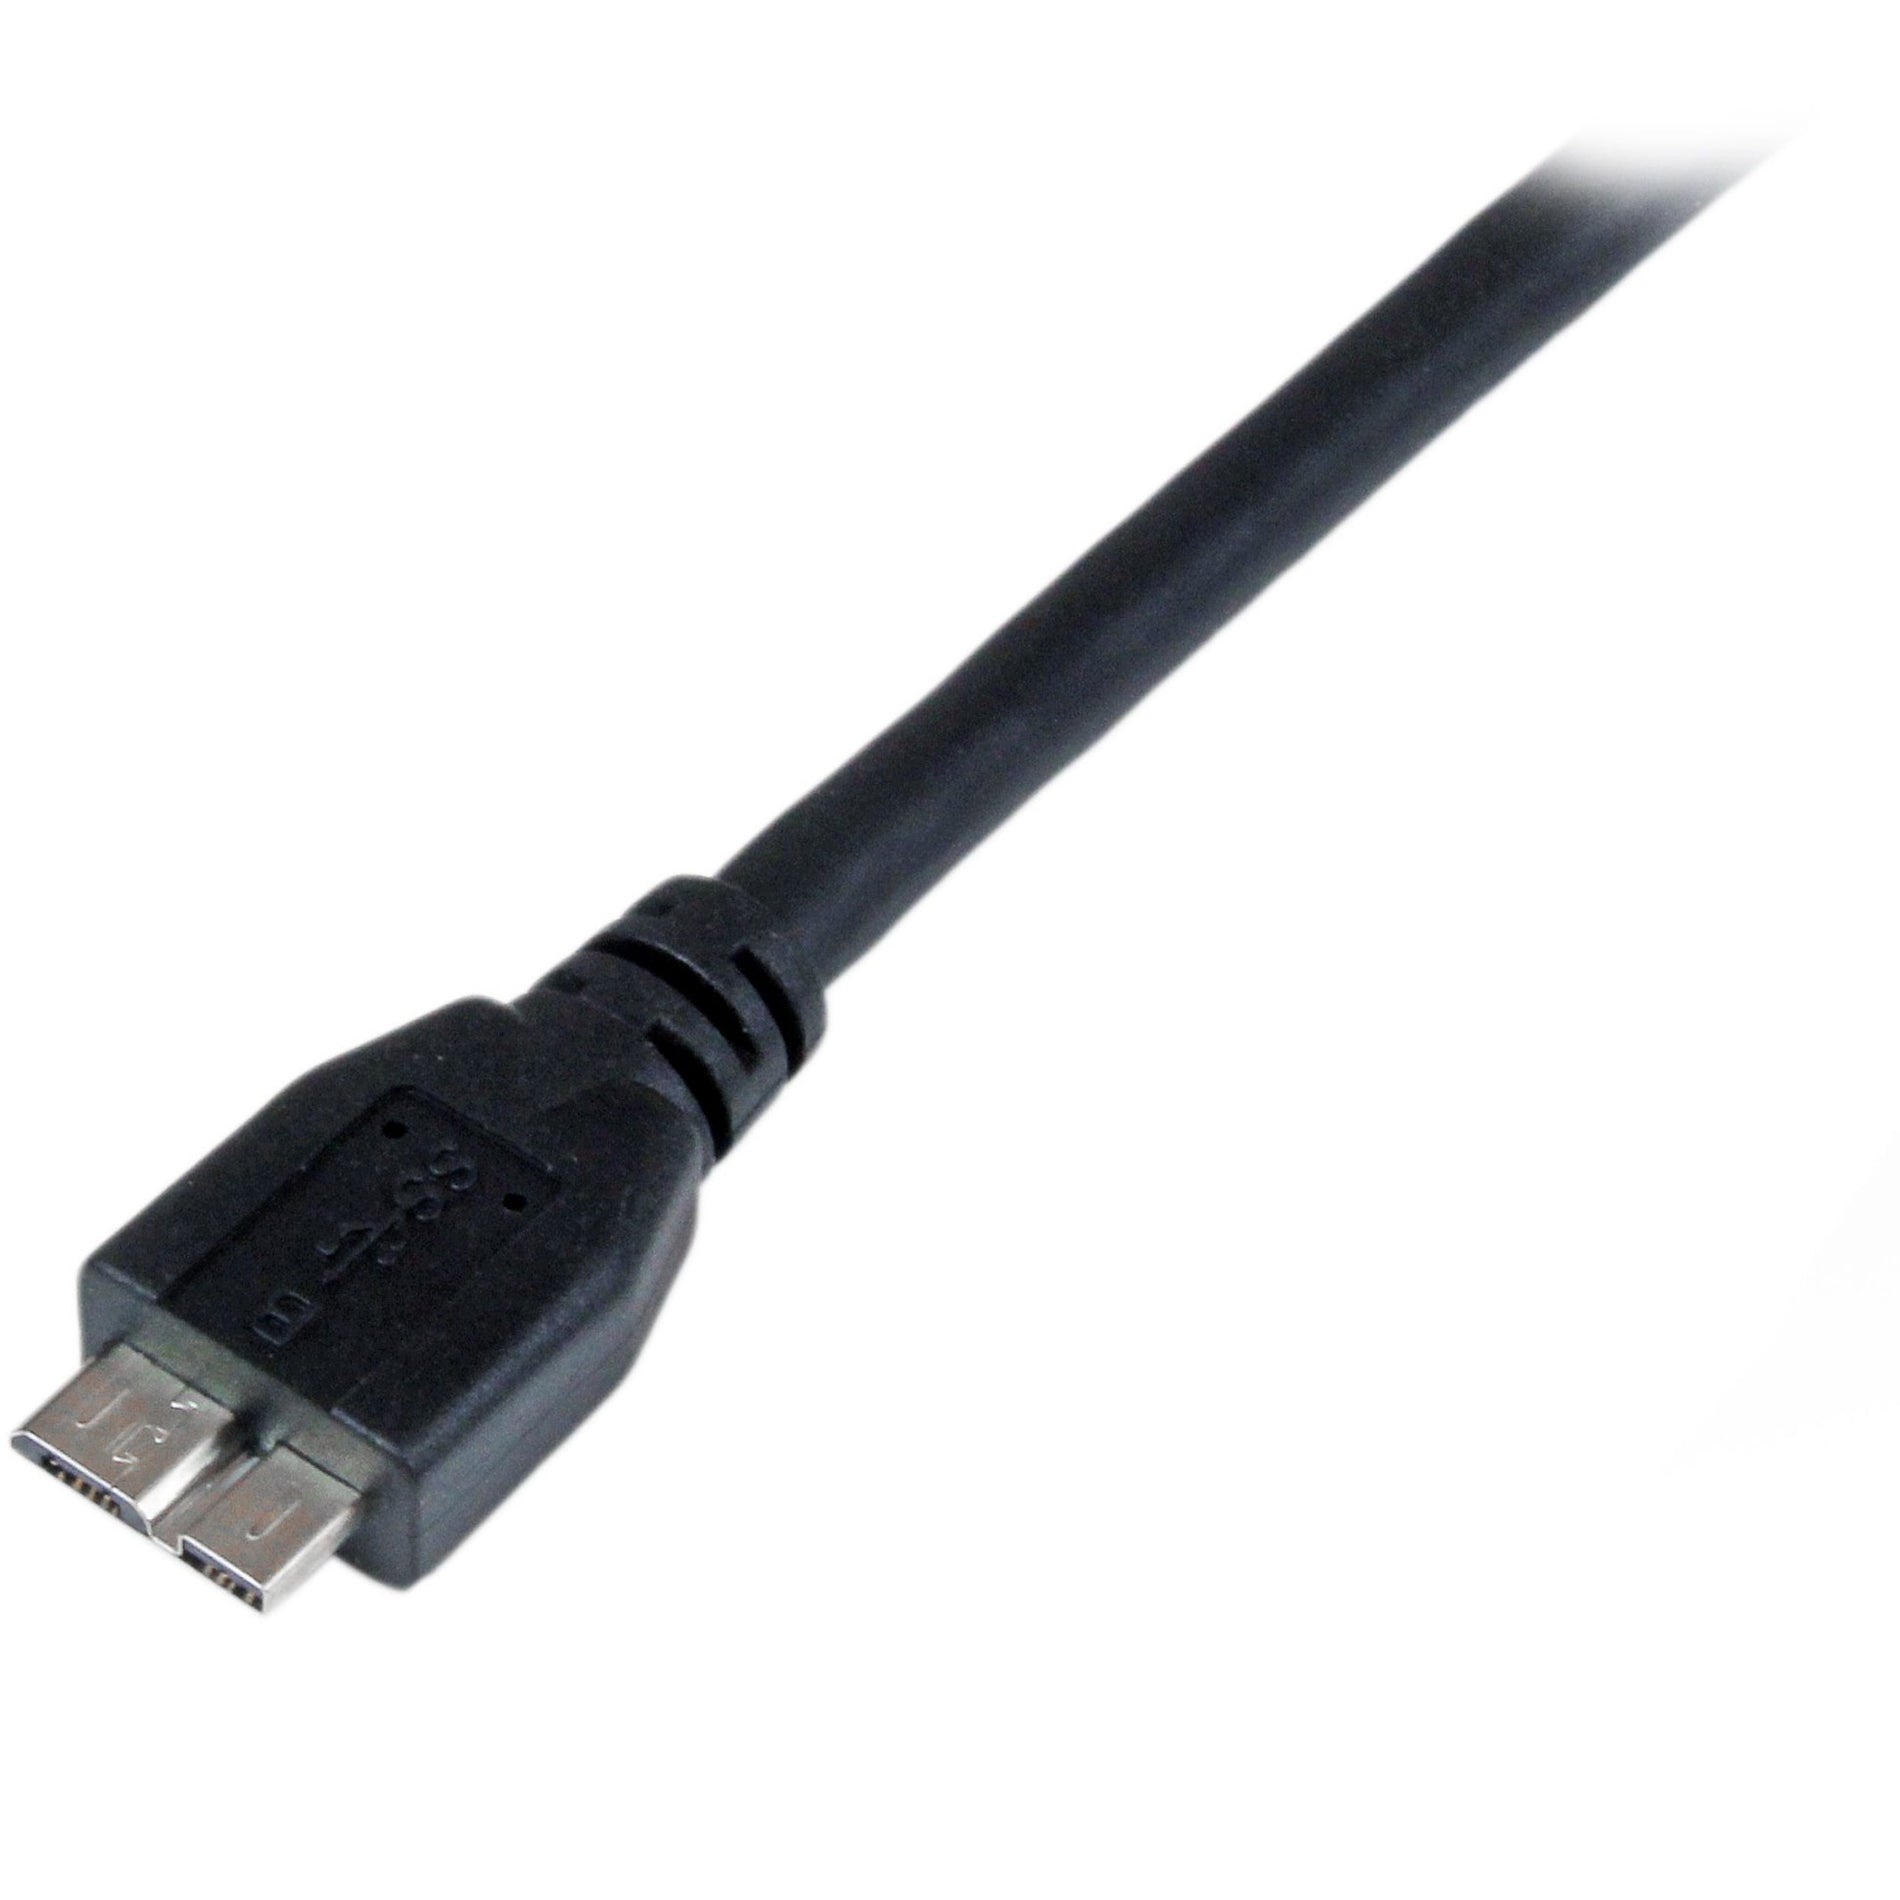 Câble SuperSpeed USB 3.0 A vers Micro B certifié StarTech.com USB3CAUB1M - M/M 1m 3ft câble de transfert de données Taux de transfert de données de 5 Gbit/s Soulagement de tension Moulé